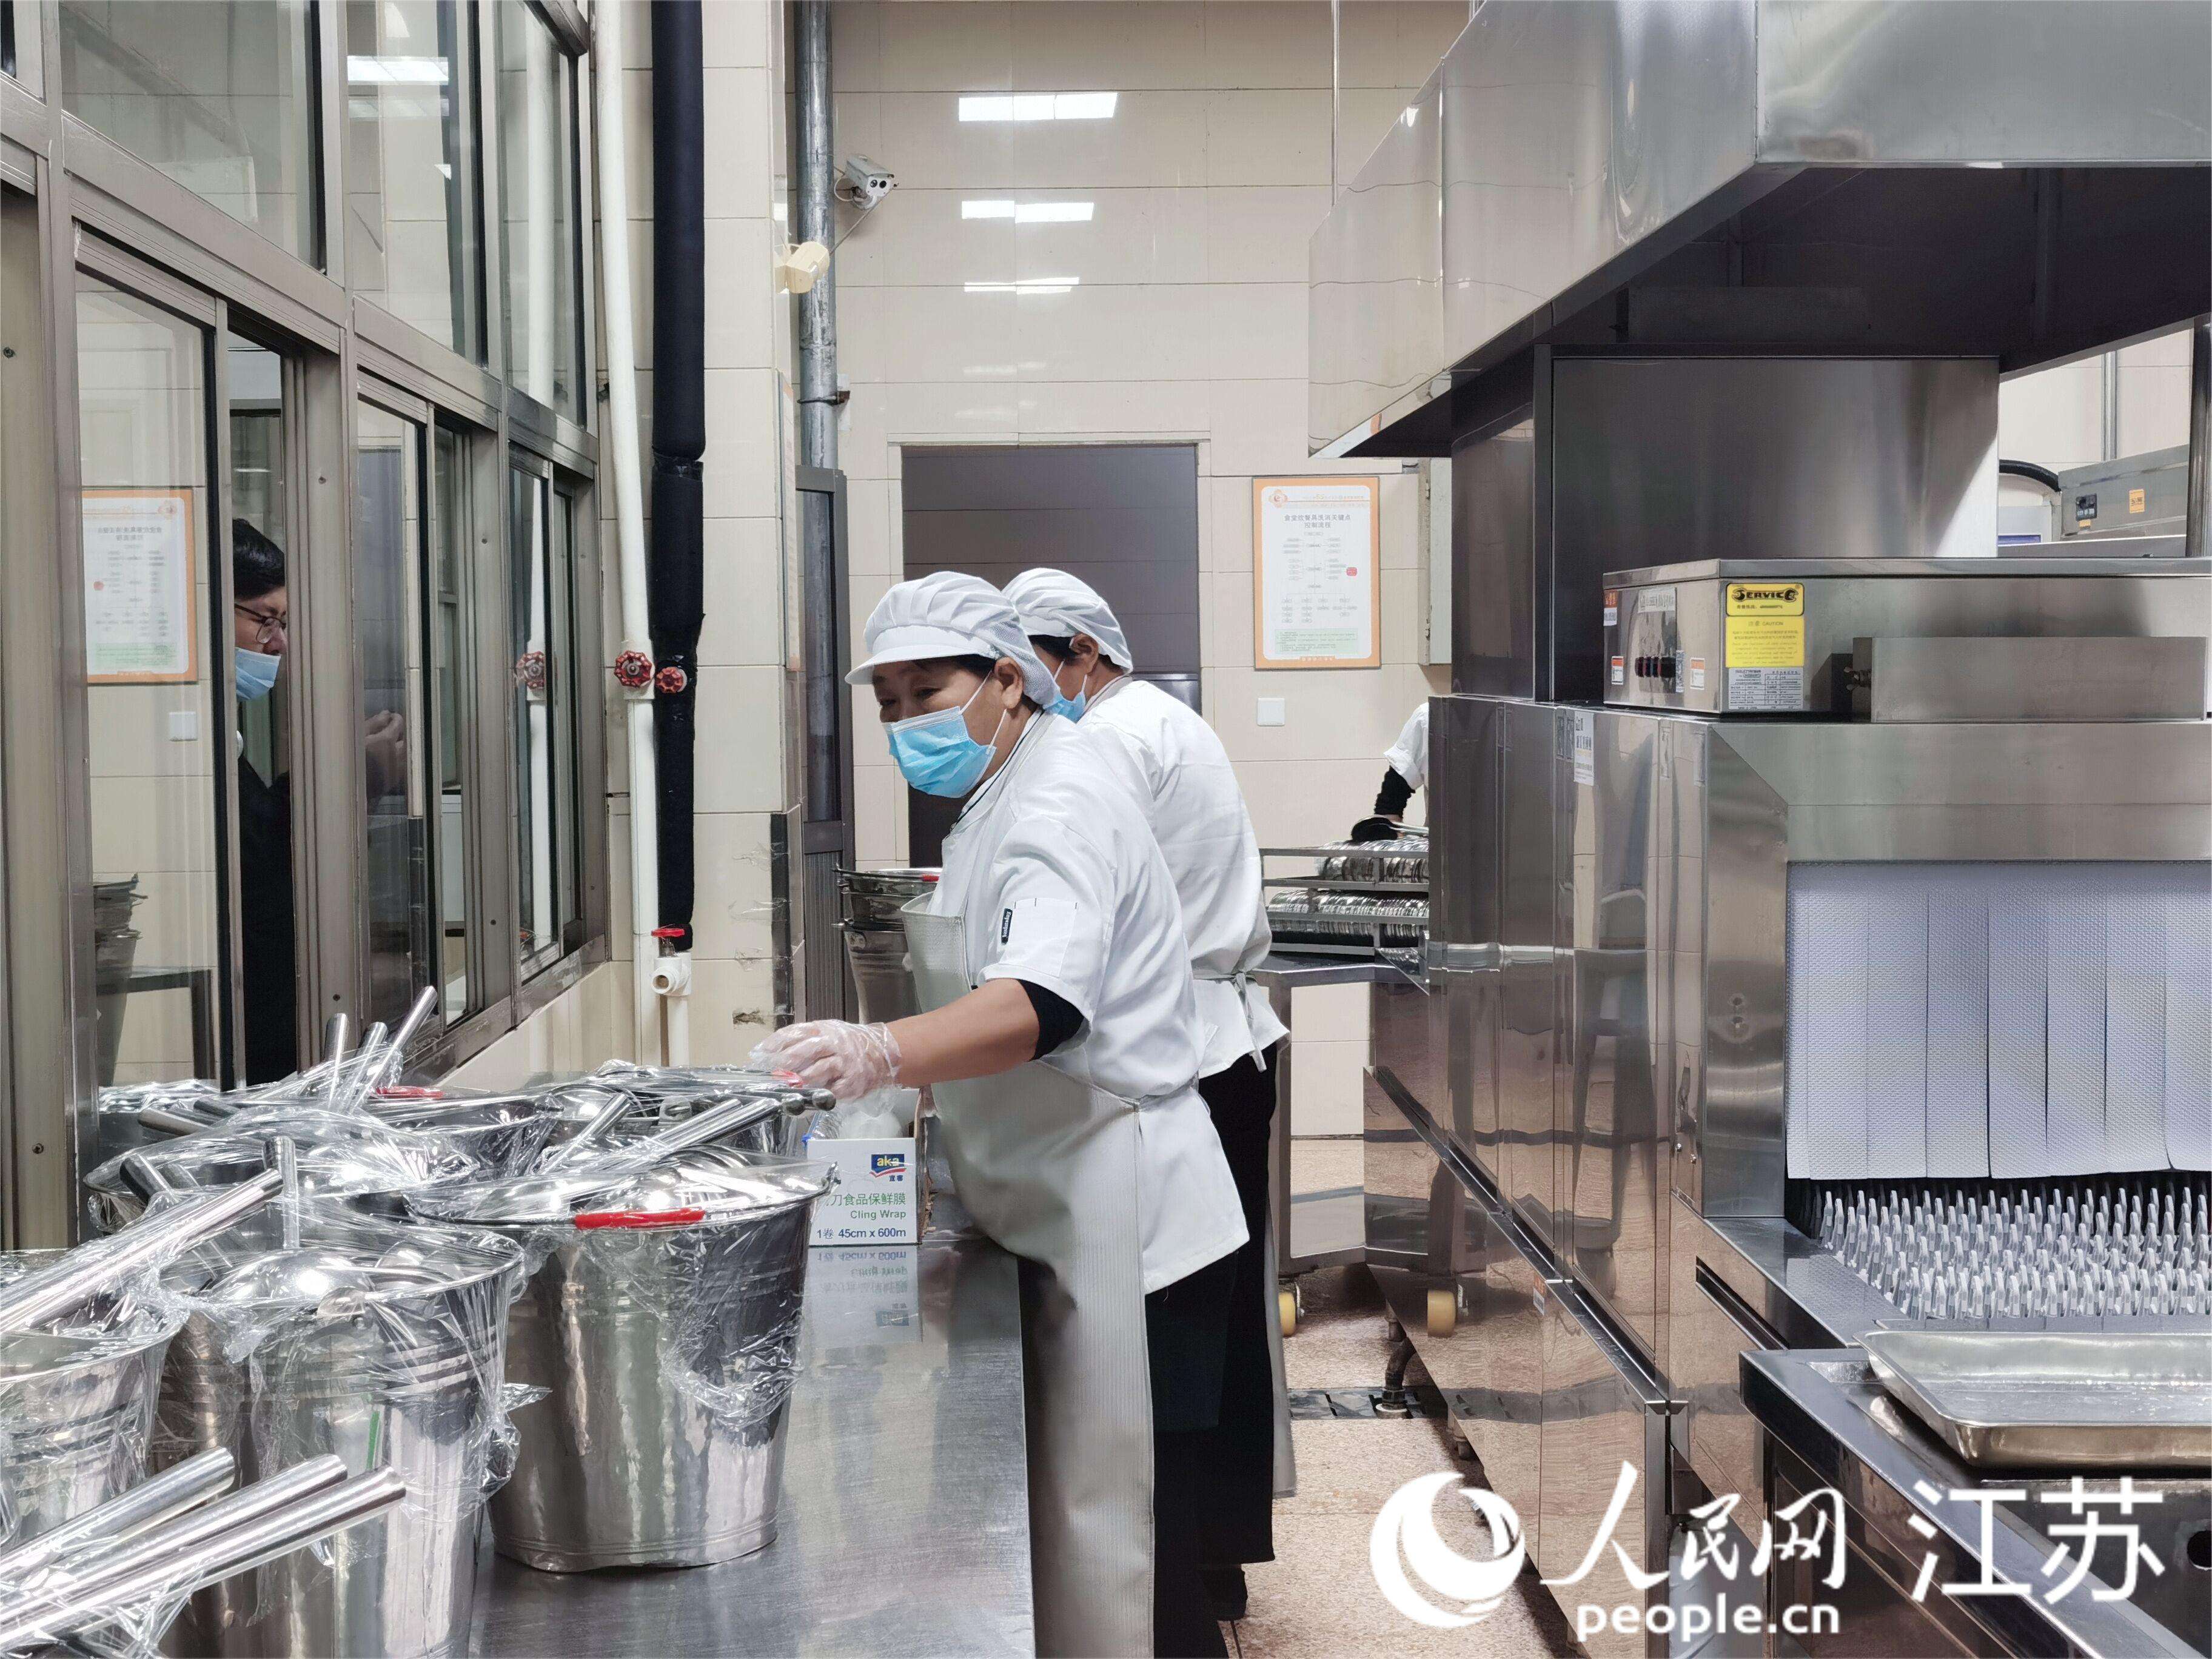 崇川学校食堂工作人员正在摆放已经严格消毒过的餐具。人民网记者王继亮摄